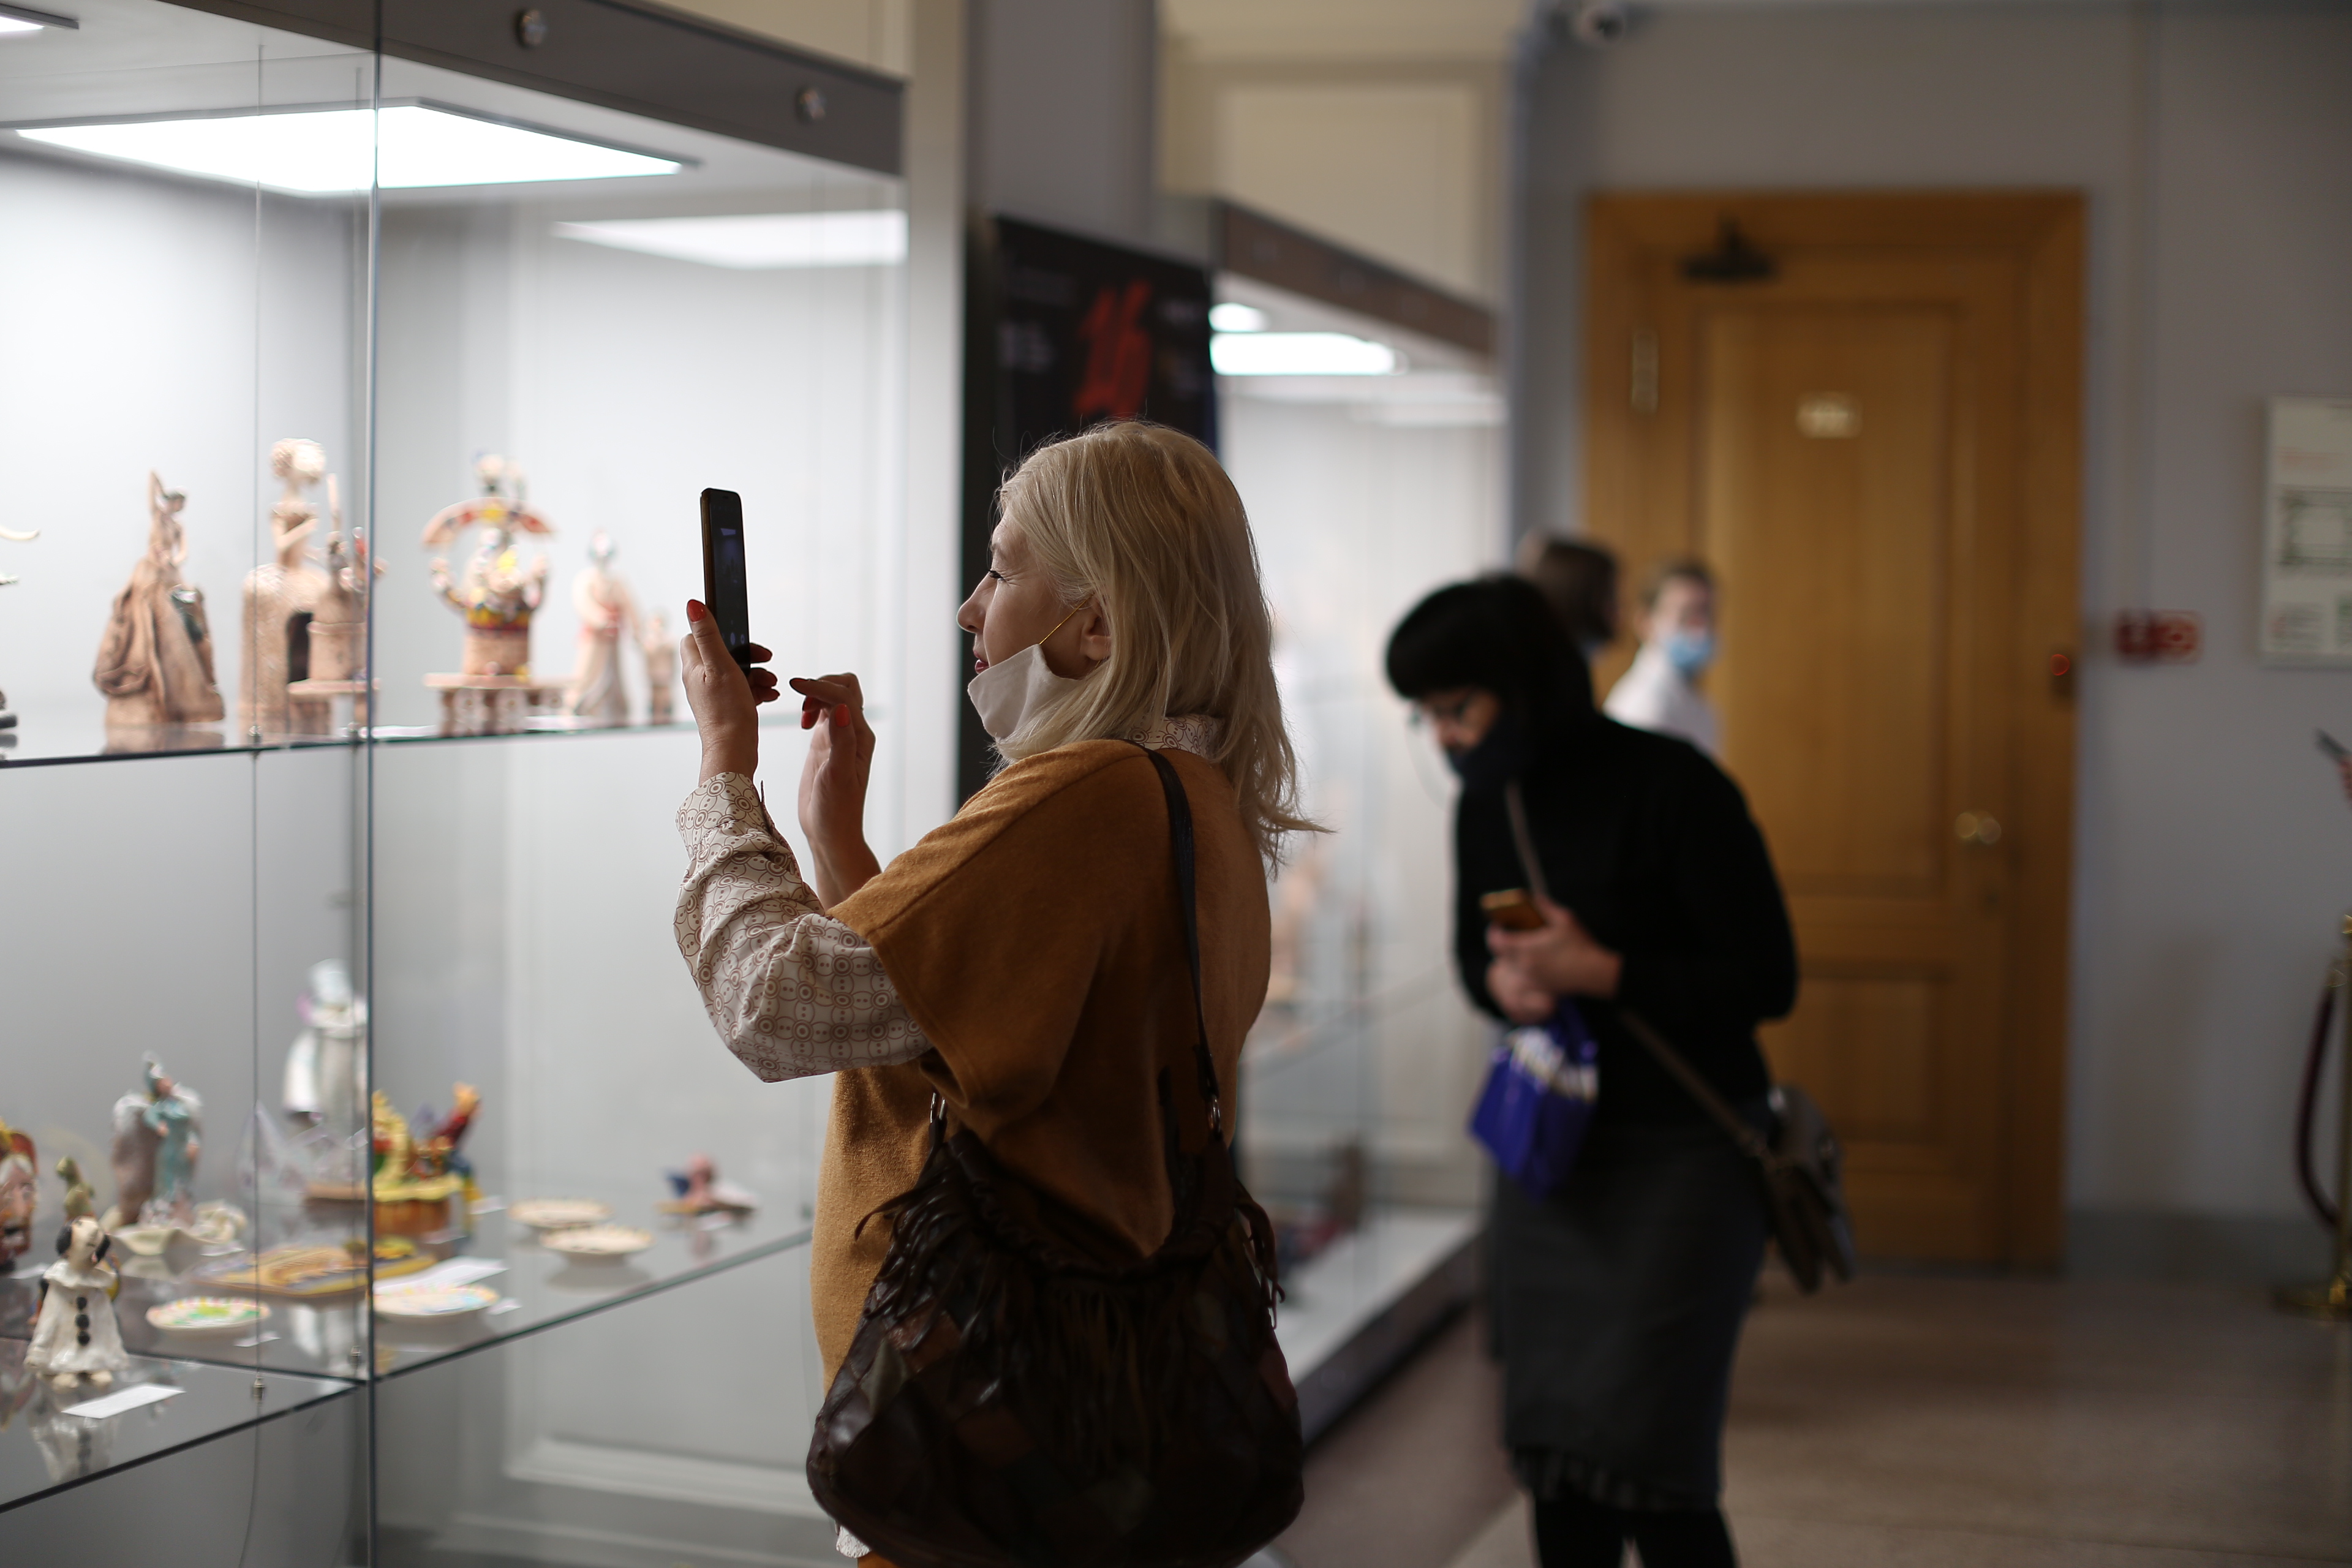 Сегодня в НОВАТе открылась выставка работ юных художников-керамистов - НОВАТ - фото №19